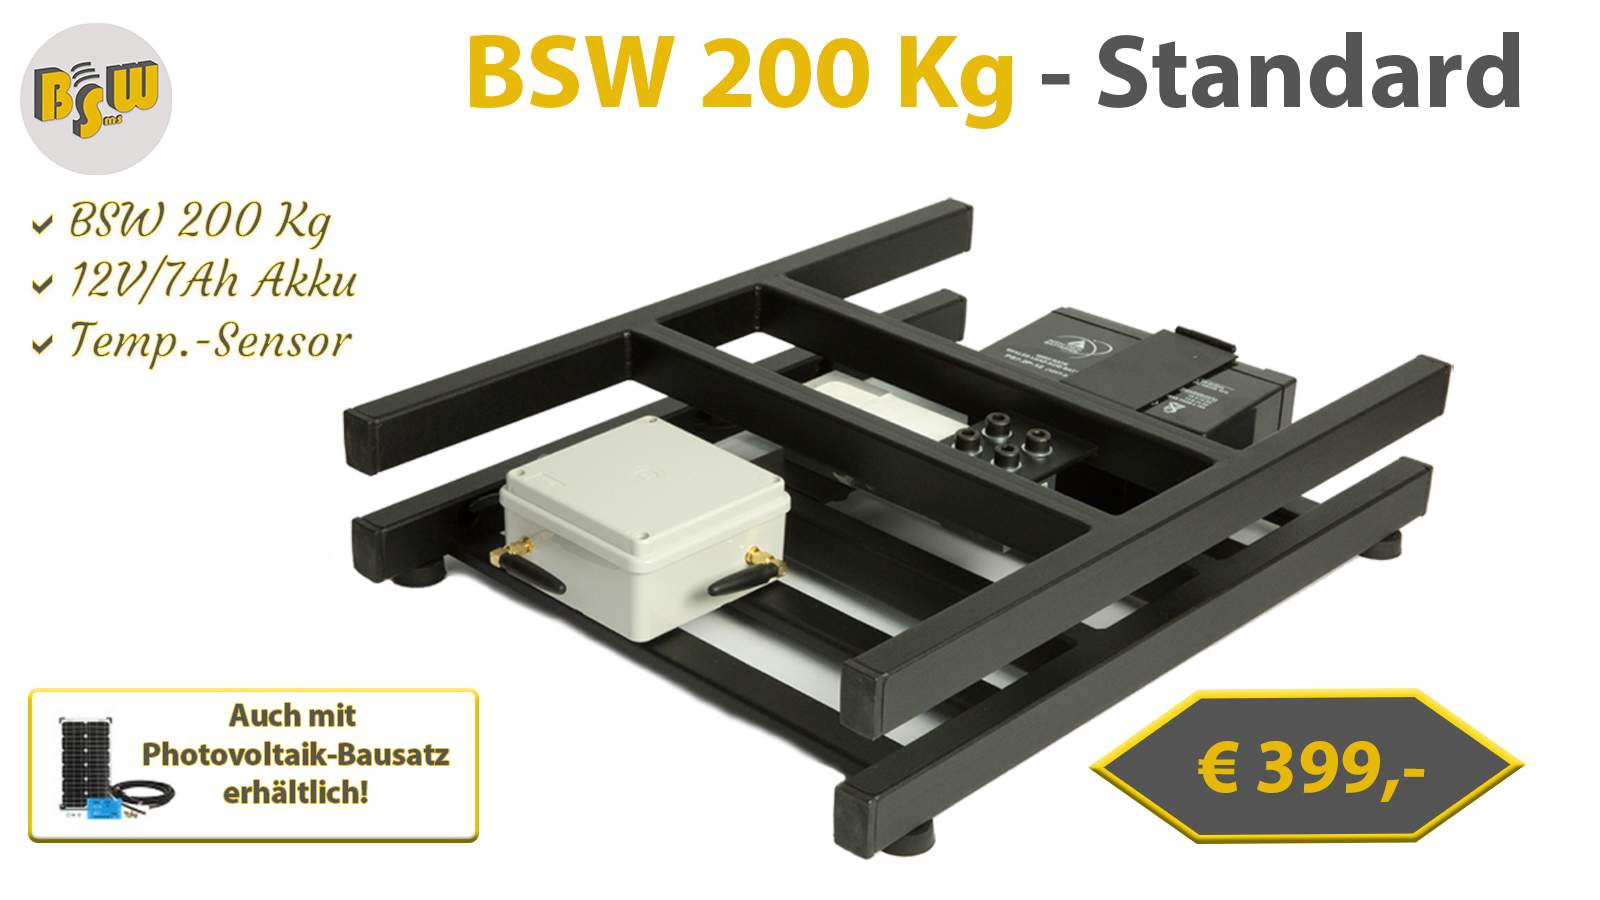 1 - BSW 200KG - Standard